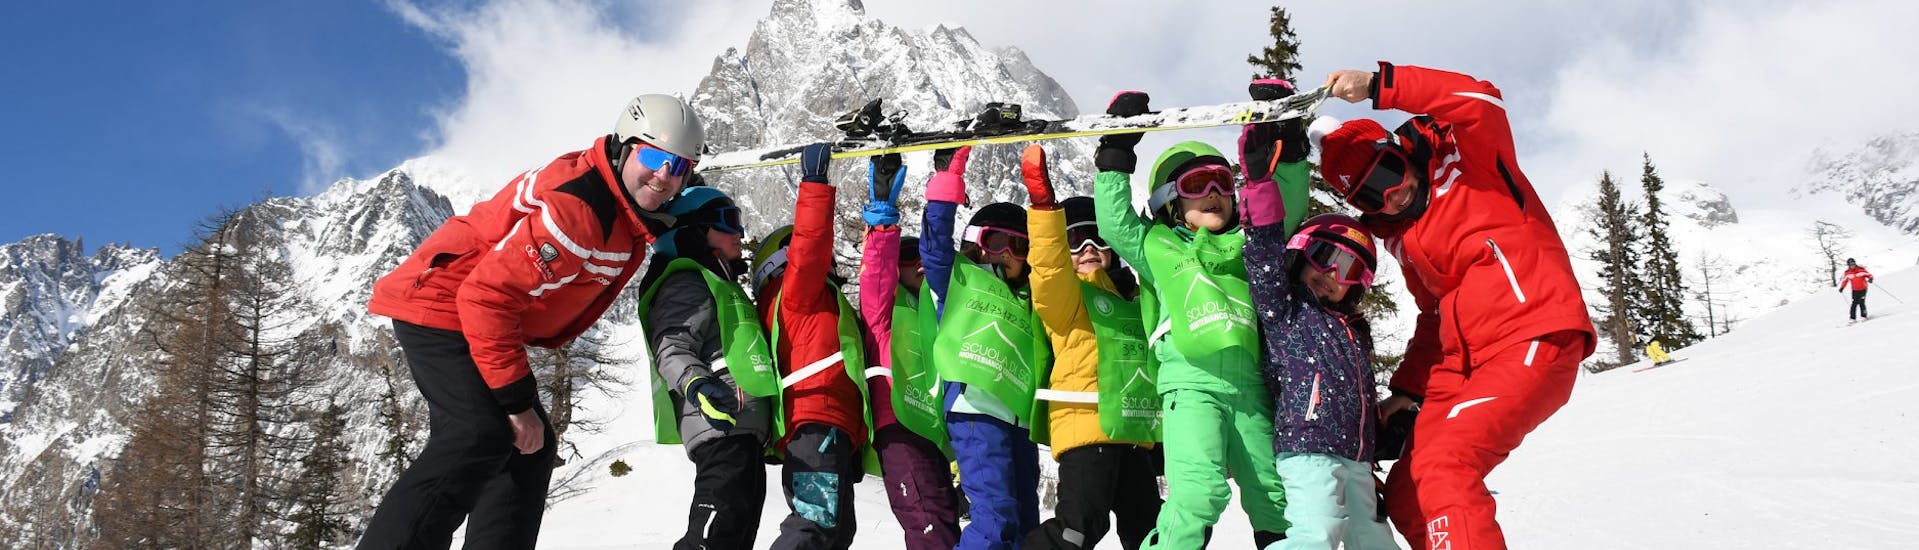 Cours de ski Enfants (4-12 ans) pour Skieurs intermédiaires.